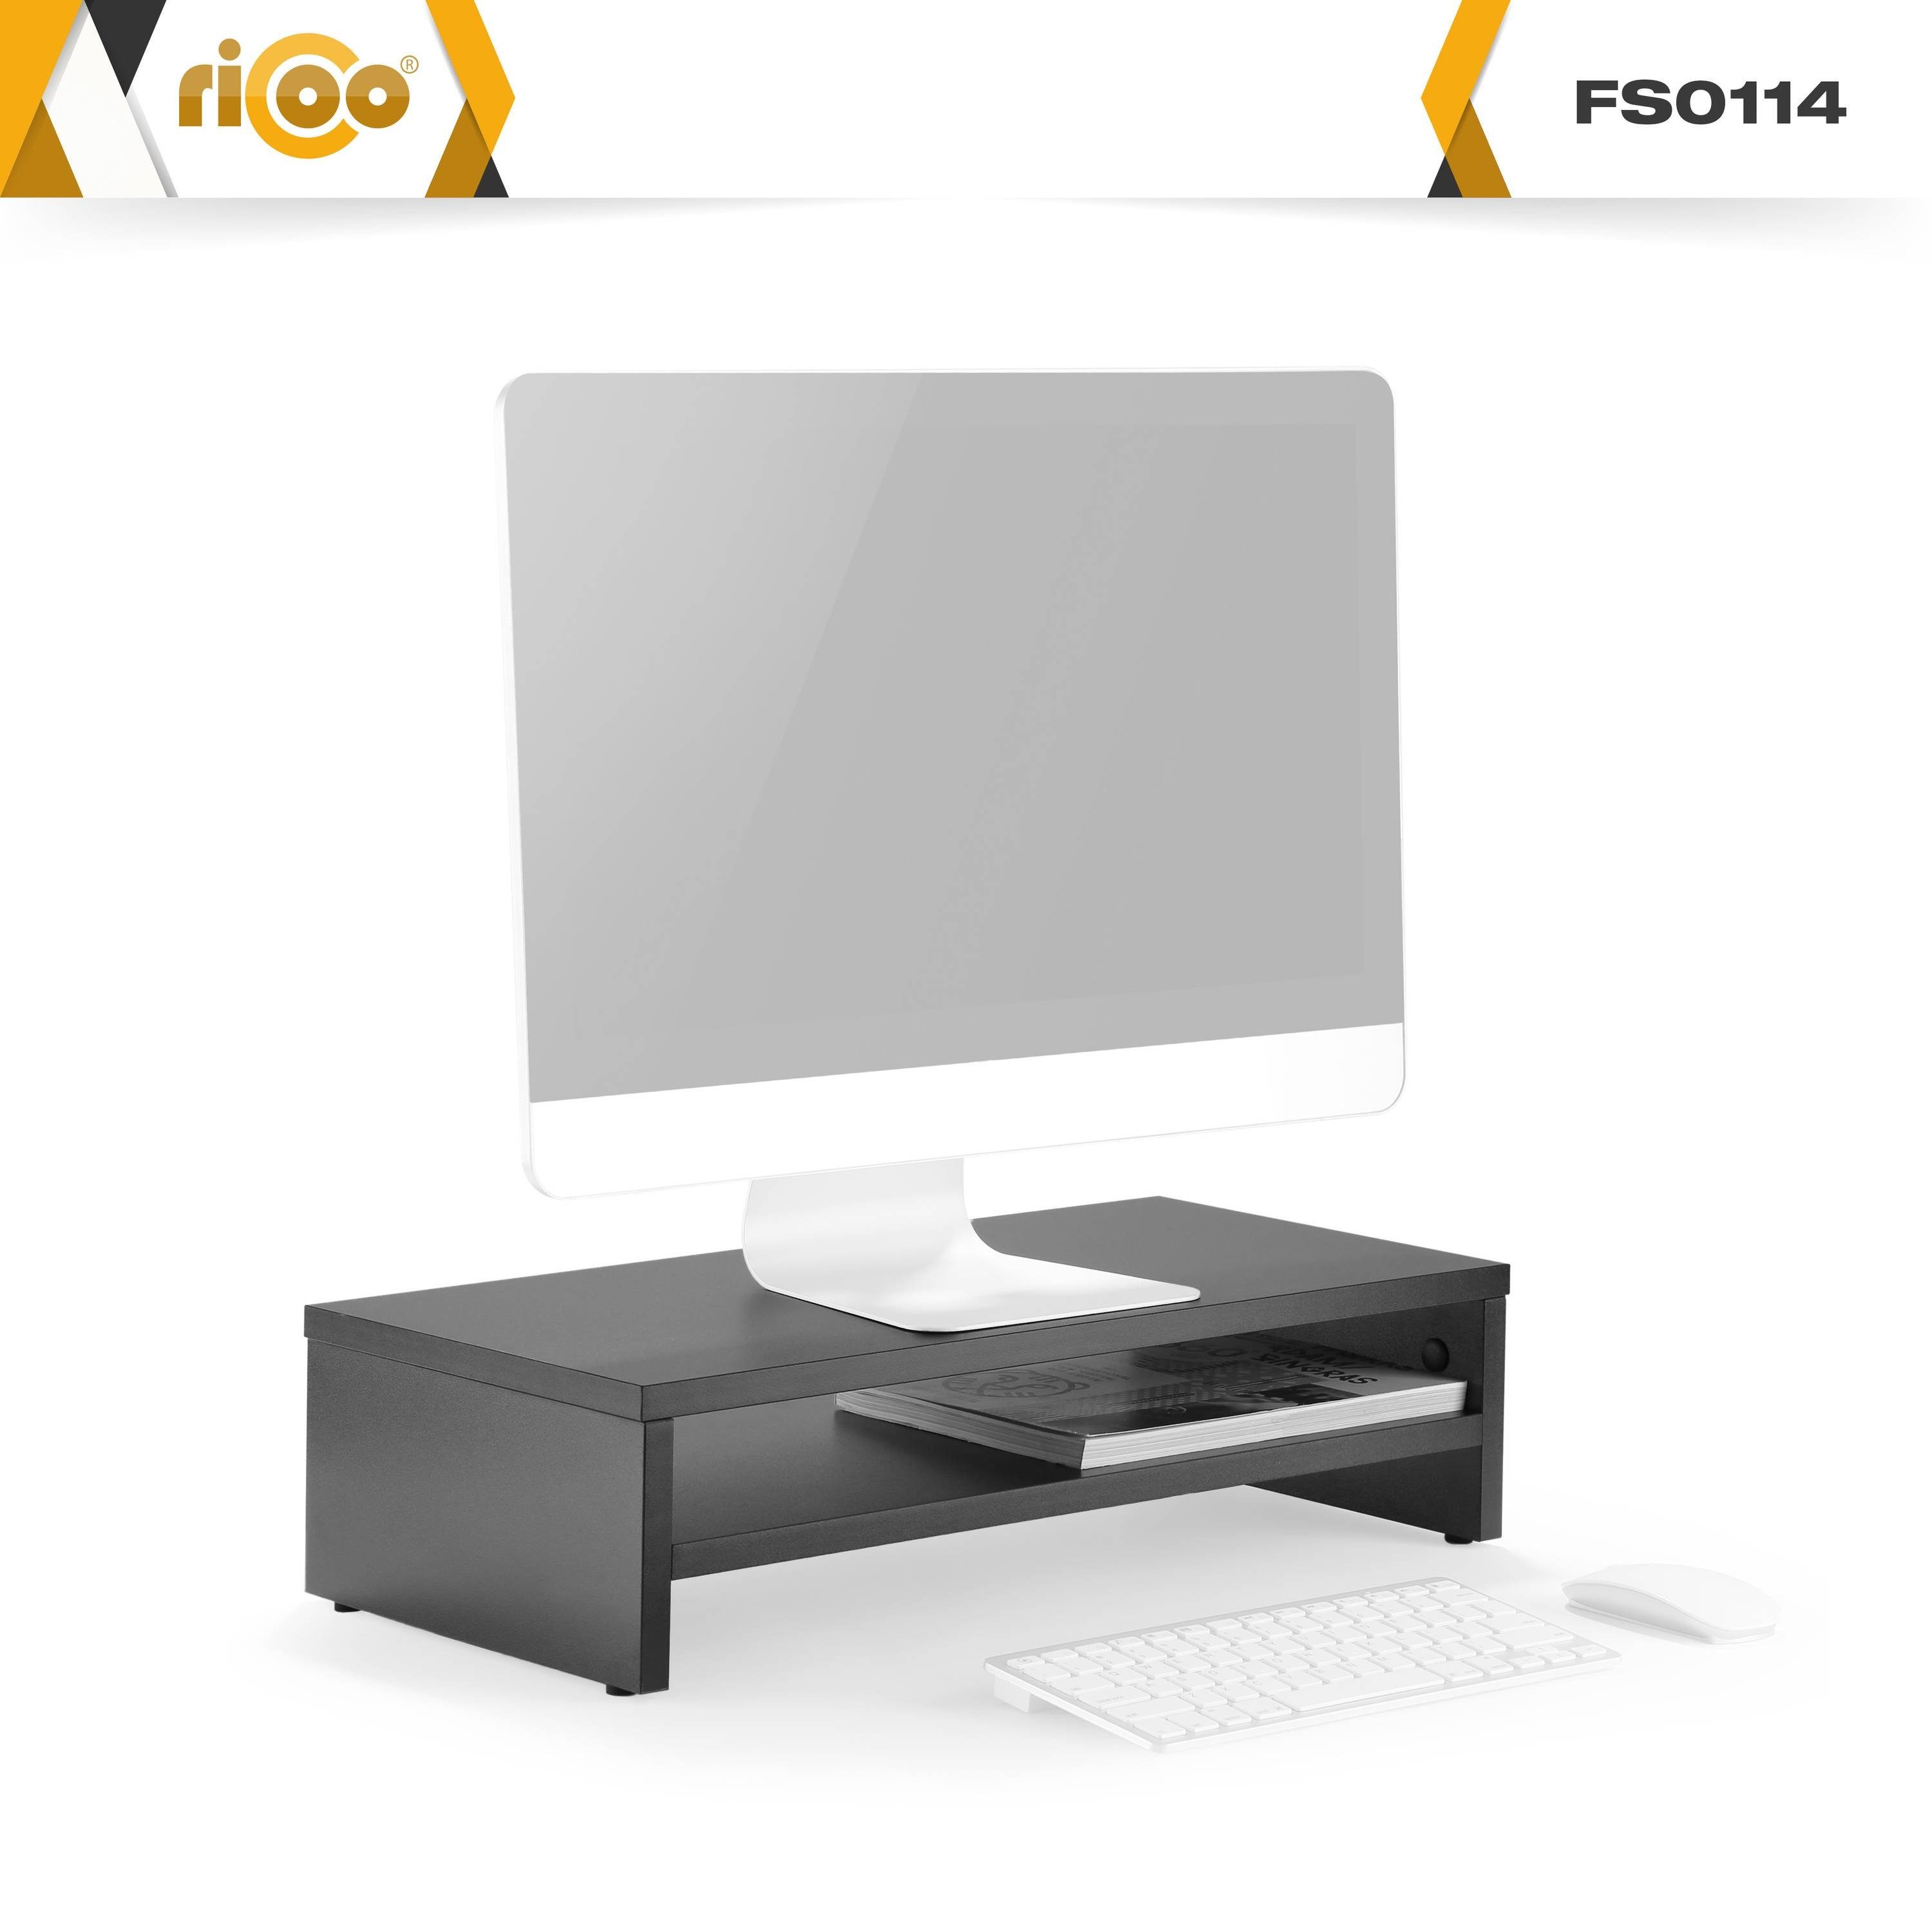 FS0114-S, Bildschirm Tisch Schreibtischaufsatz Schwarz RICOO Schreibtisch Monitorständer Aufsatz Monitorerhöhung